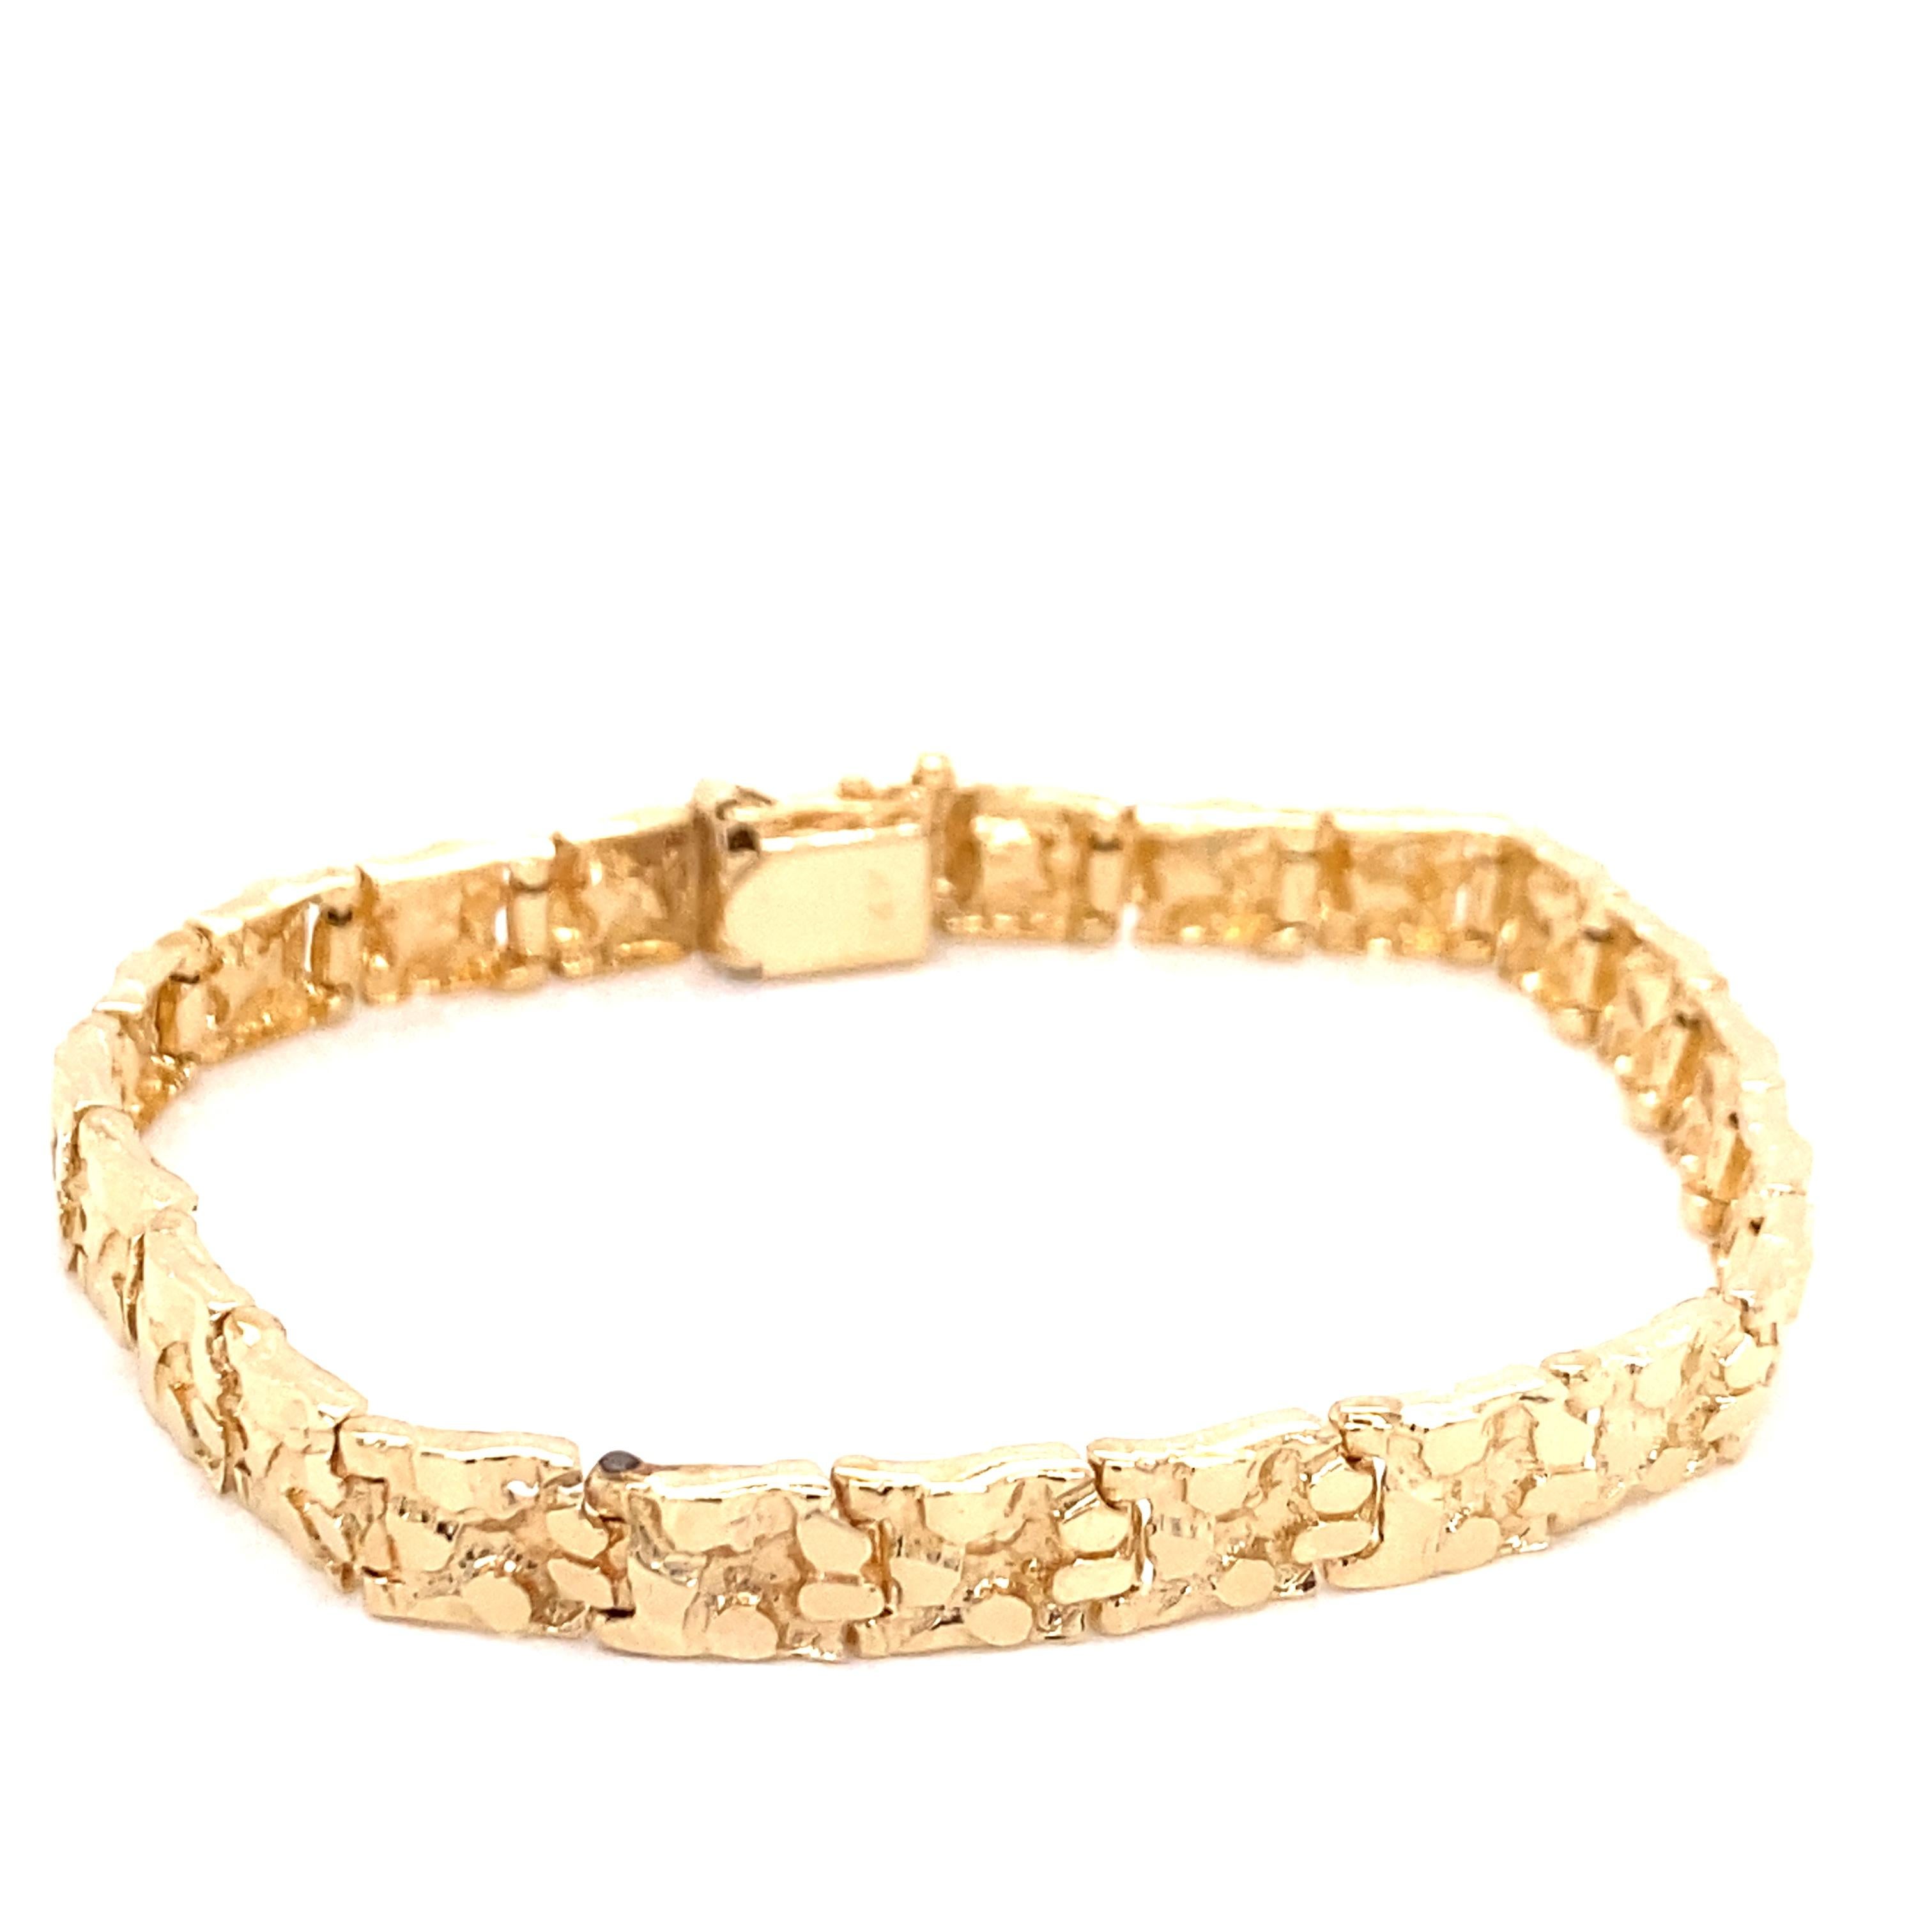 Vintage 1970's 14K Yellow Gold Nugget Bracelet - Le bracelet mesure .25 pouces de large et 7.25 pouces de long. Il est doté d'un fermoir à plongeur et d'une fermeture de sécurité en forme de 8. Le bracelet pèse 15,15 grammes.